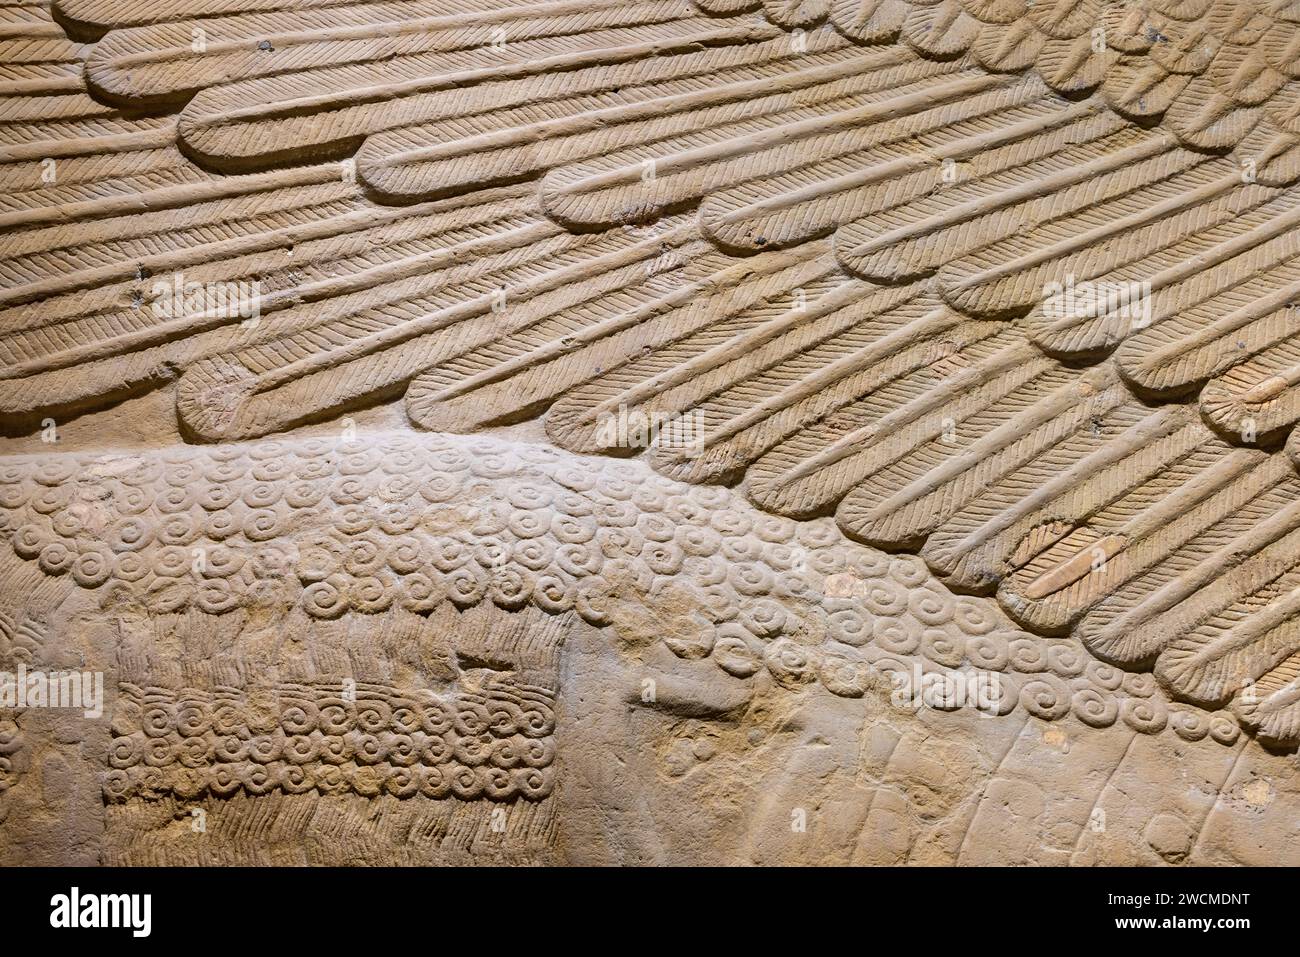 Détail de l'aile, lamassu assyrien (taureau ailé à tête humaine), palais de dur-Sharrukin, Khorsabad, Irak, maintenant dans le musée de l'Irak, Bagdad, Irak Banque D'Images